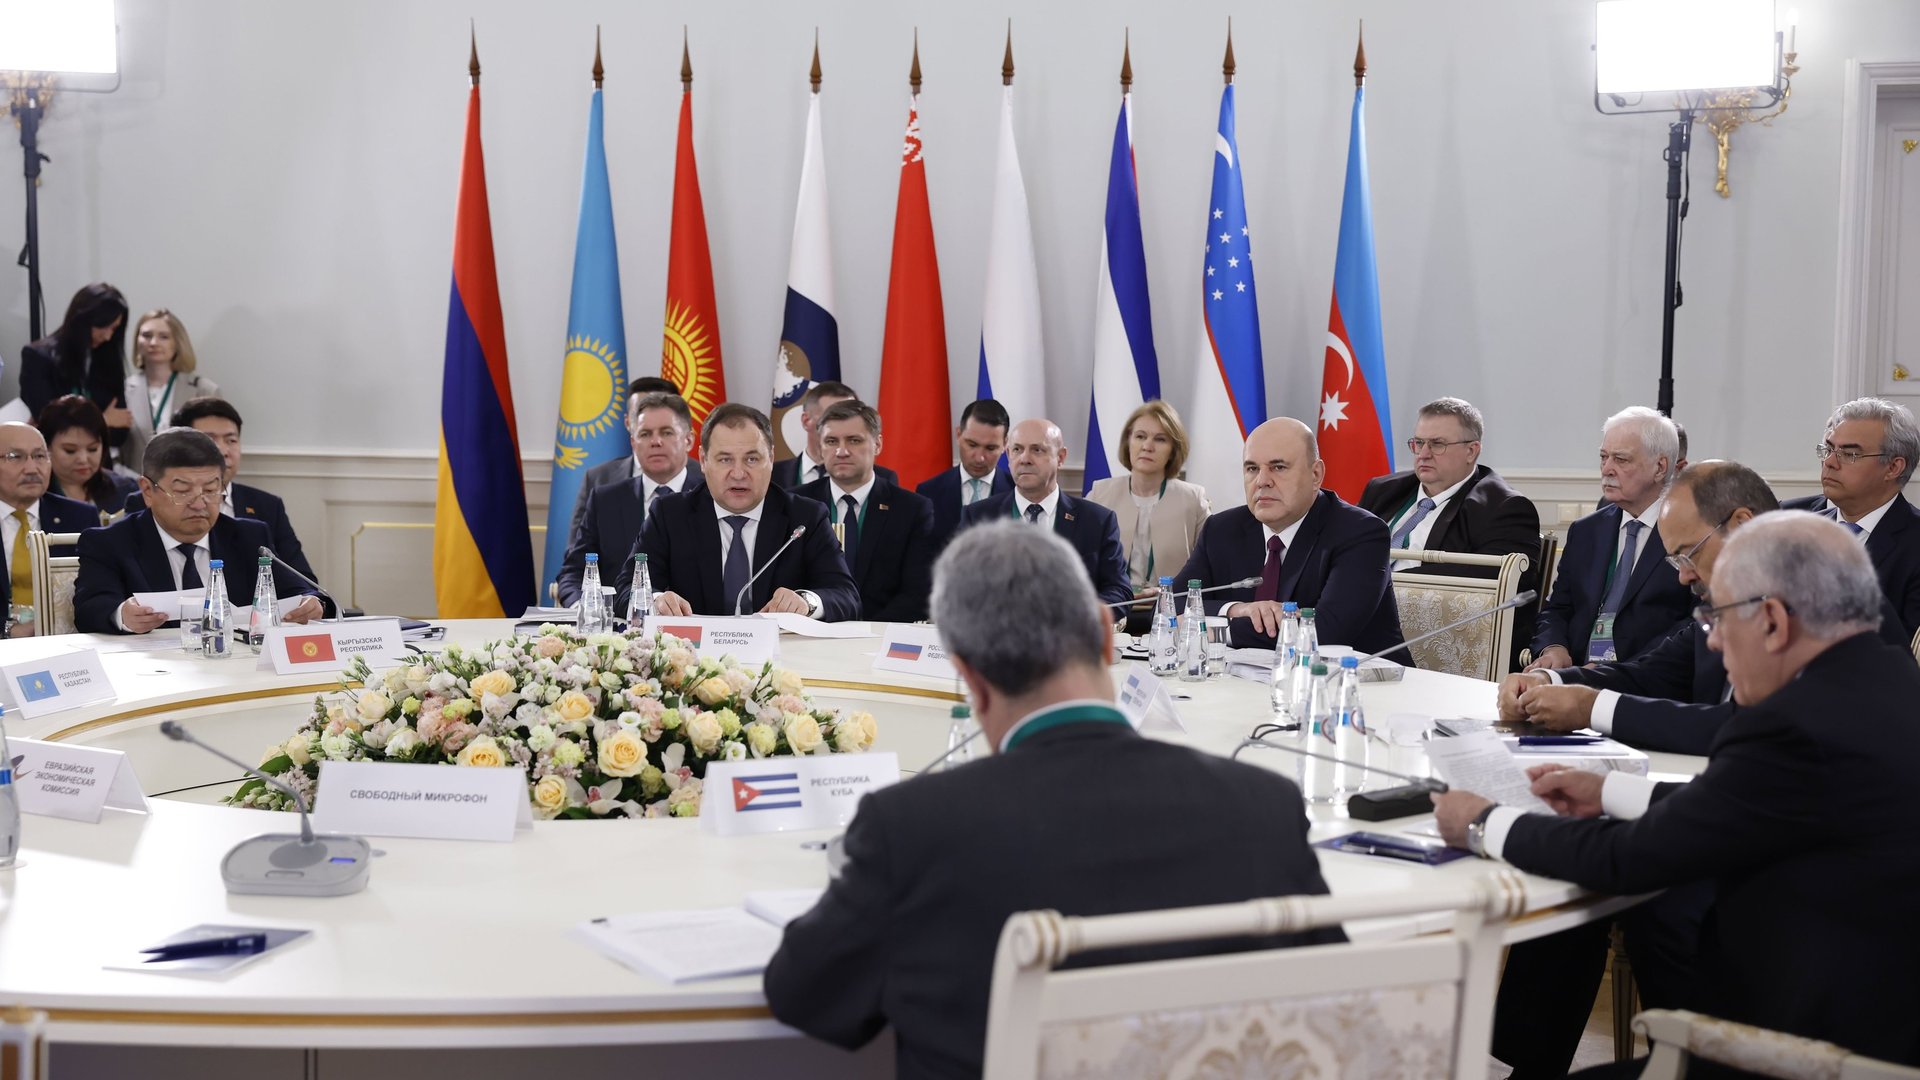 Заседание Евразийского межправительственного совета. 
Минск, Республика Беларусь